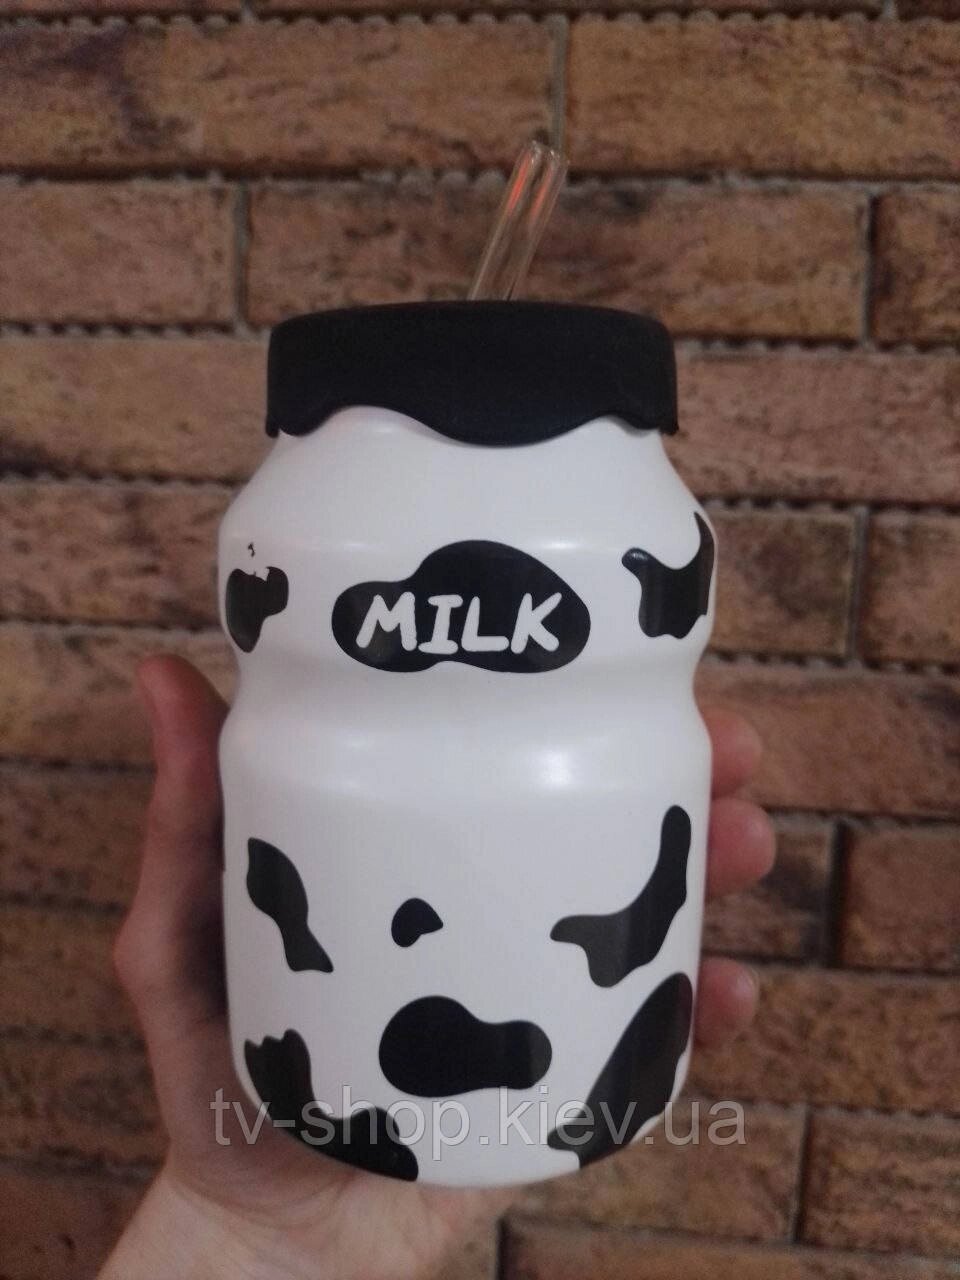 Чашка з трубочкою та кришкою "Milk" від компанії ІНТЕРНЕТ МАГАЗИН * ТВ-ШОП * - фото 1